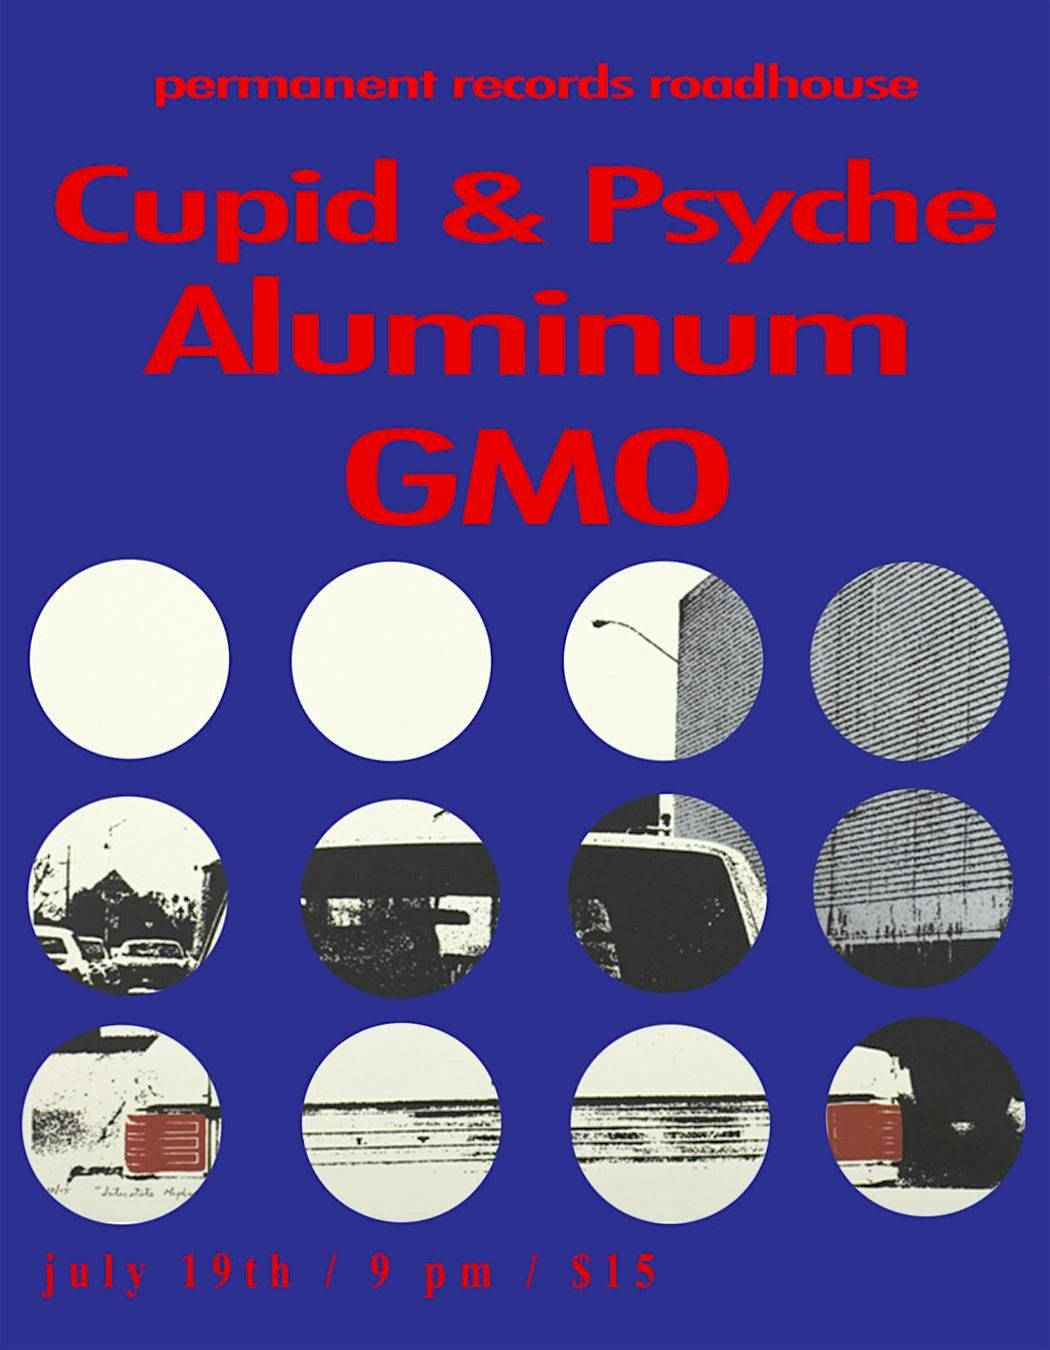 Cupid & Psyche, Aluminum, GMO